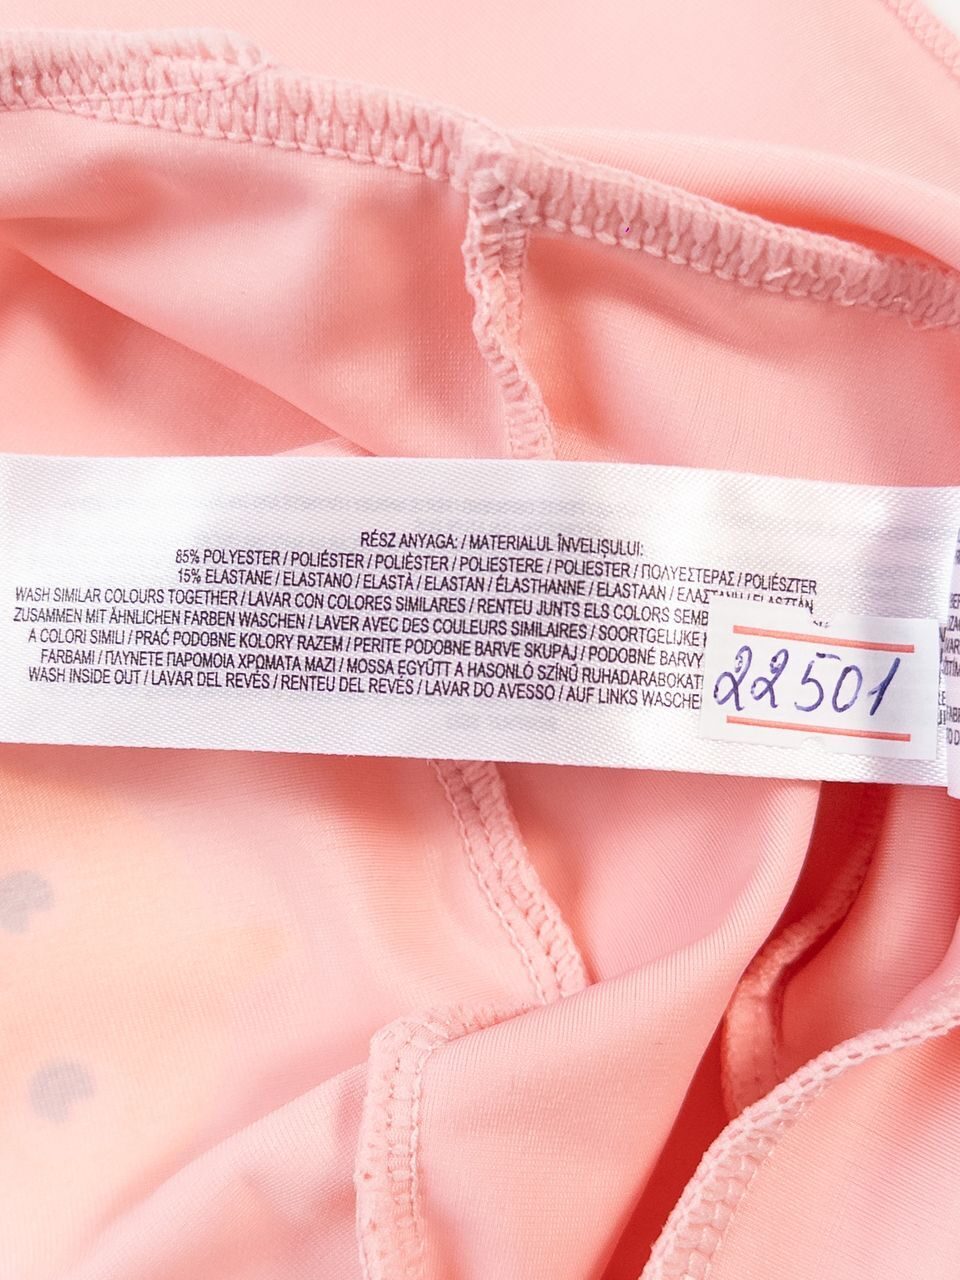 Кепка купальная для девочки с защитой шеи от солнца цвет розовый принт Акула на рост 74 см 6-9 мес Primark